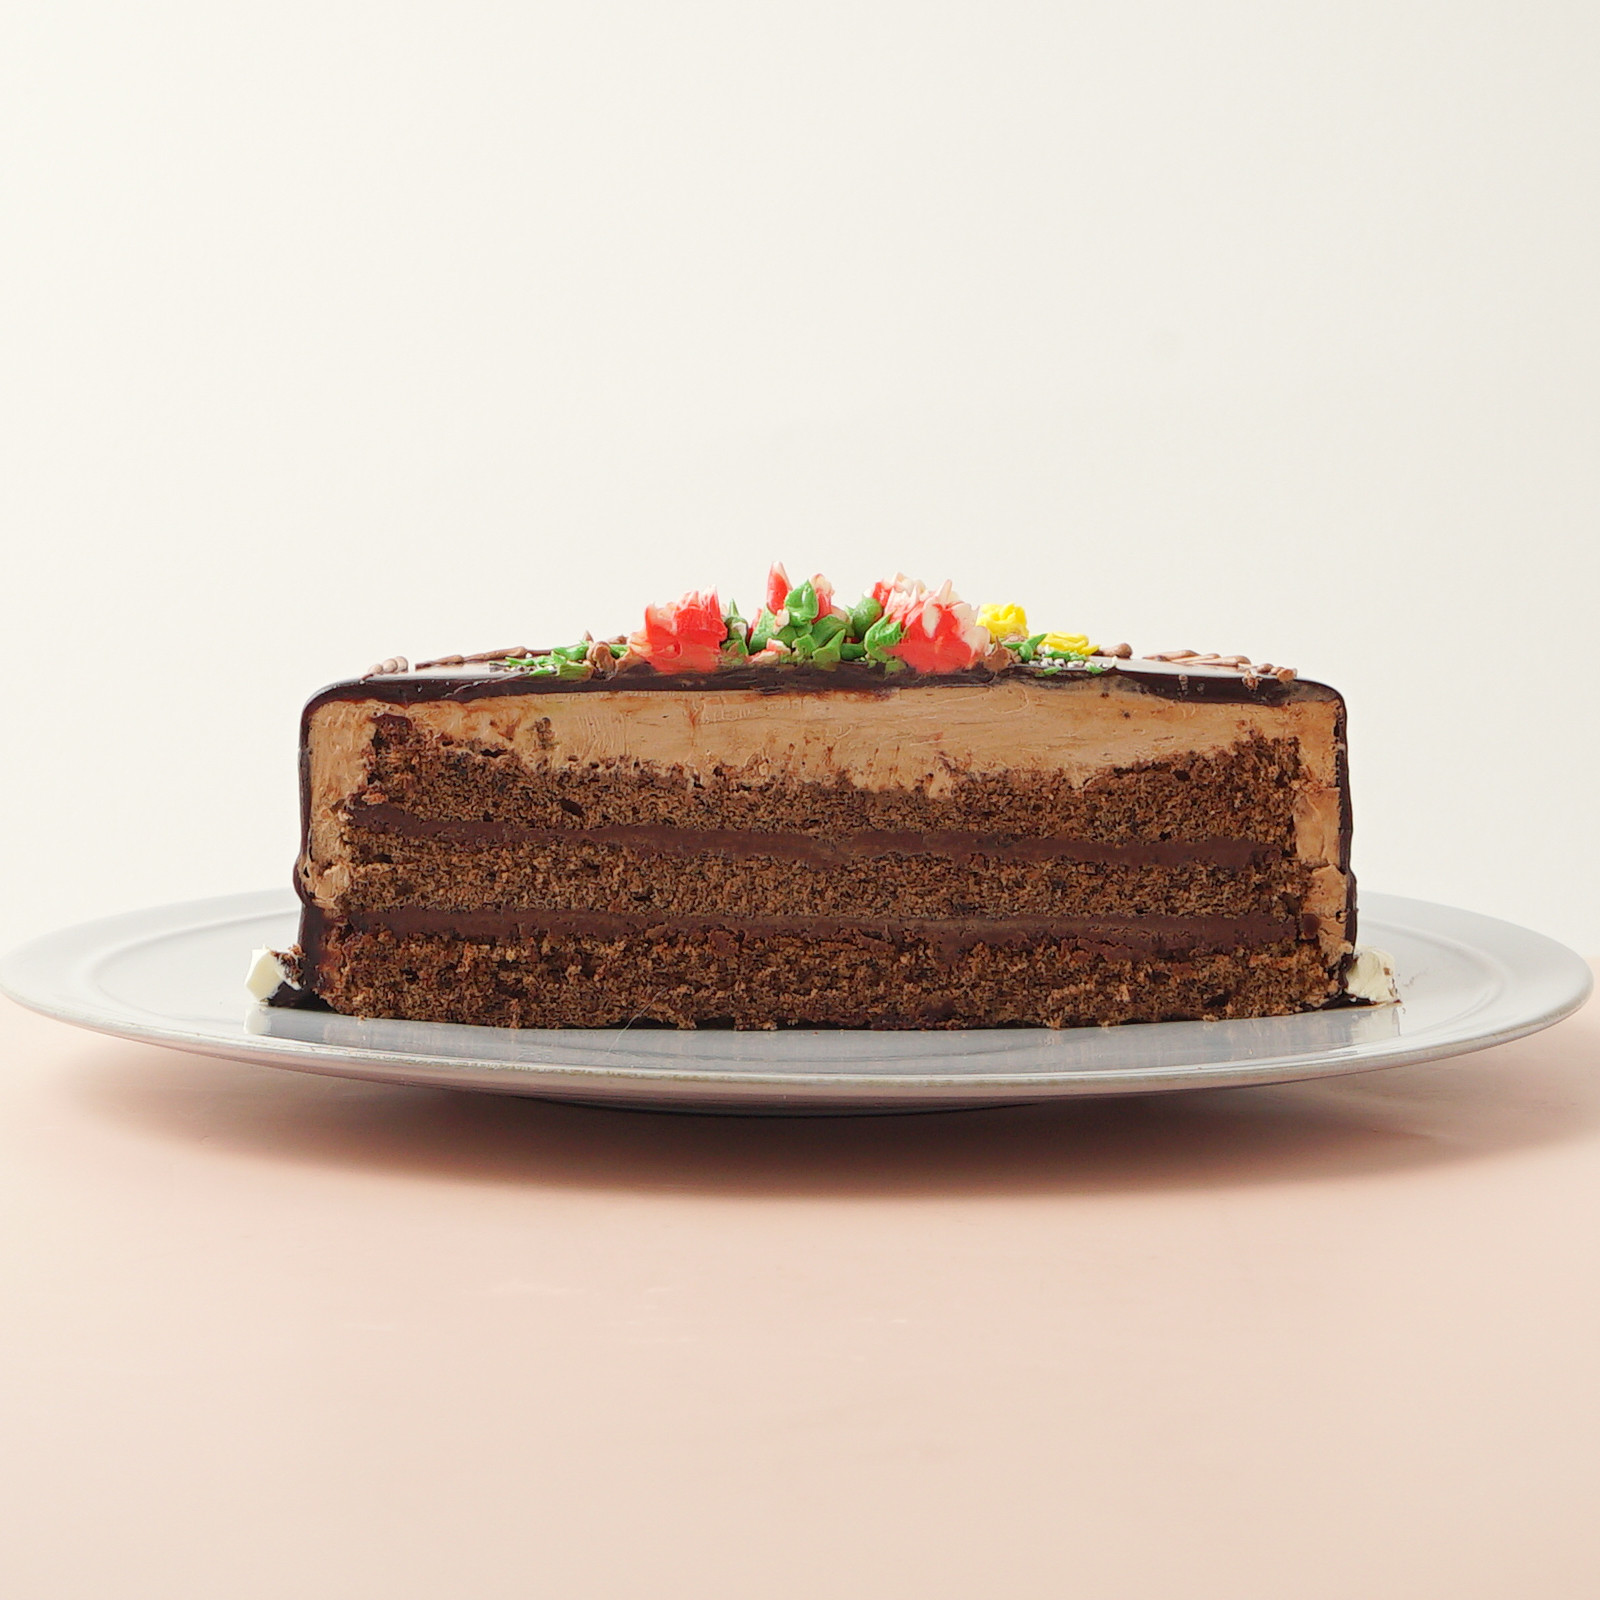 カーネーションのチョコレートクリームデコレーション 《Cake.jp限定》 5